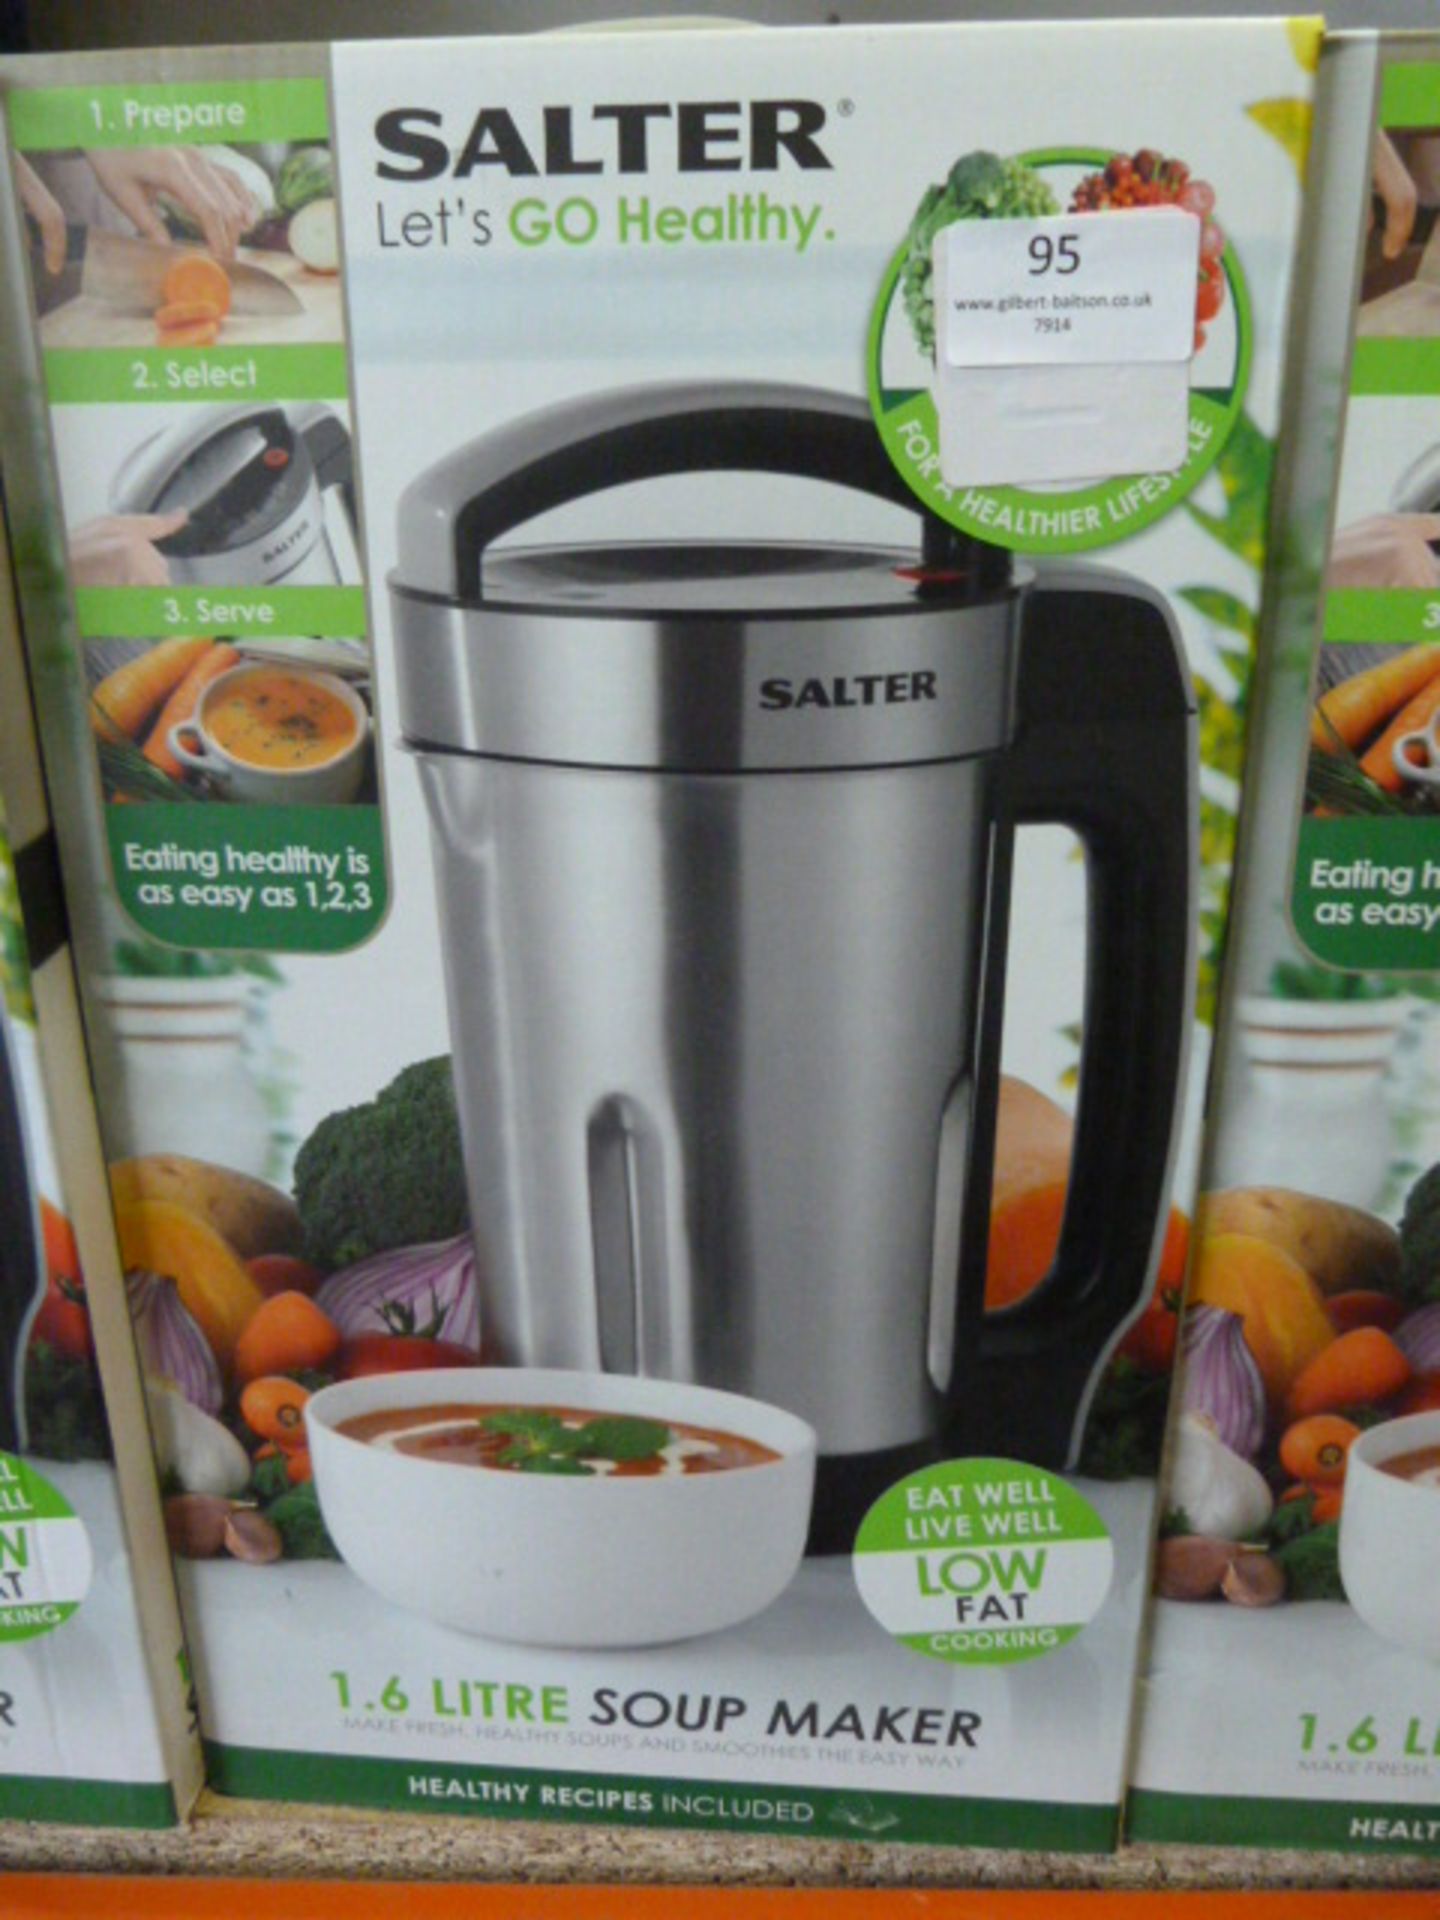 *Salter "Let's Go Healthy" Soup Maker